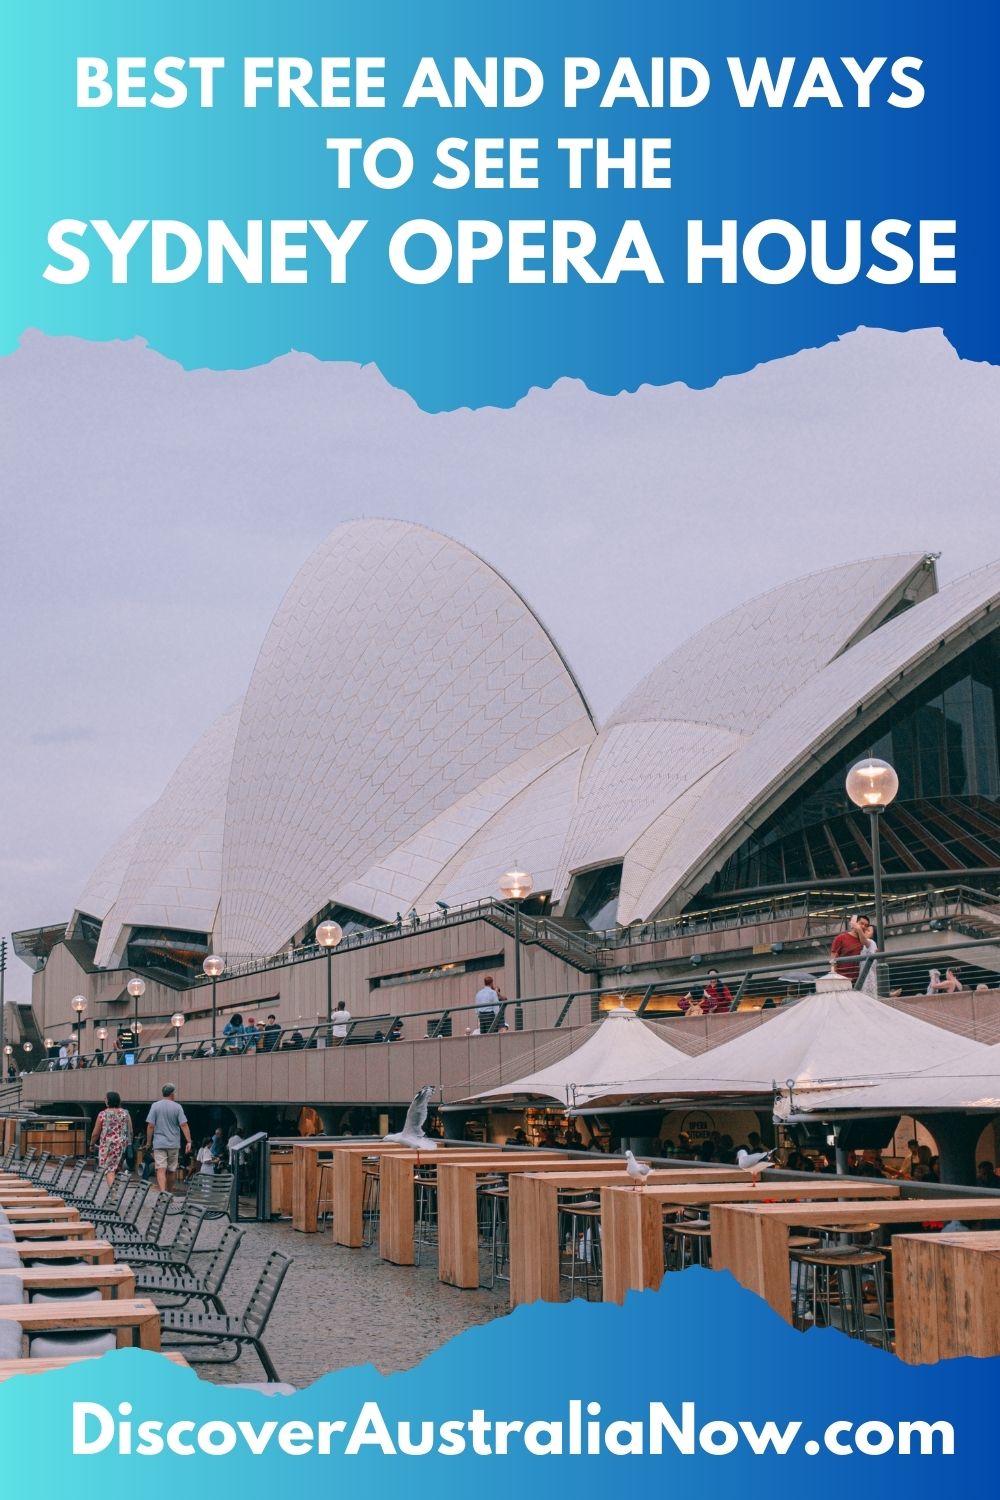 Sydney Opera House under grey skies.